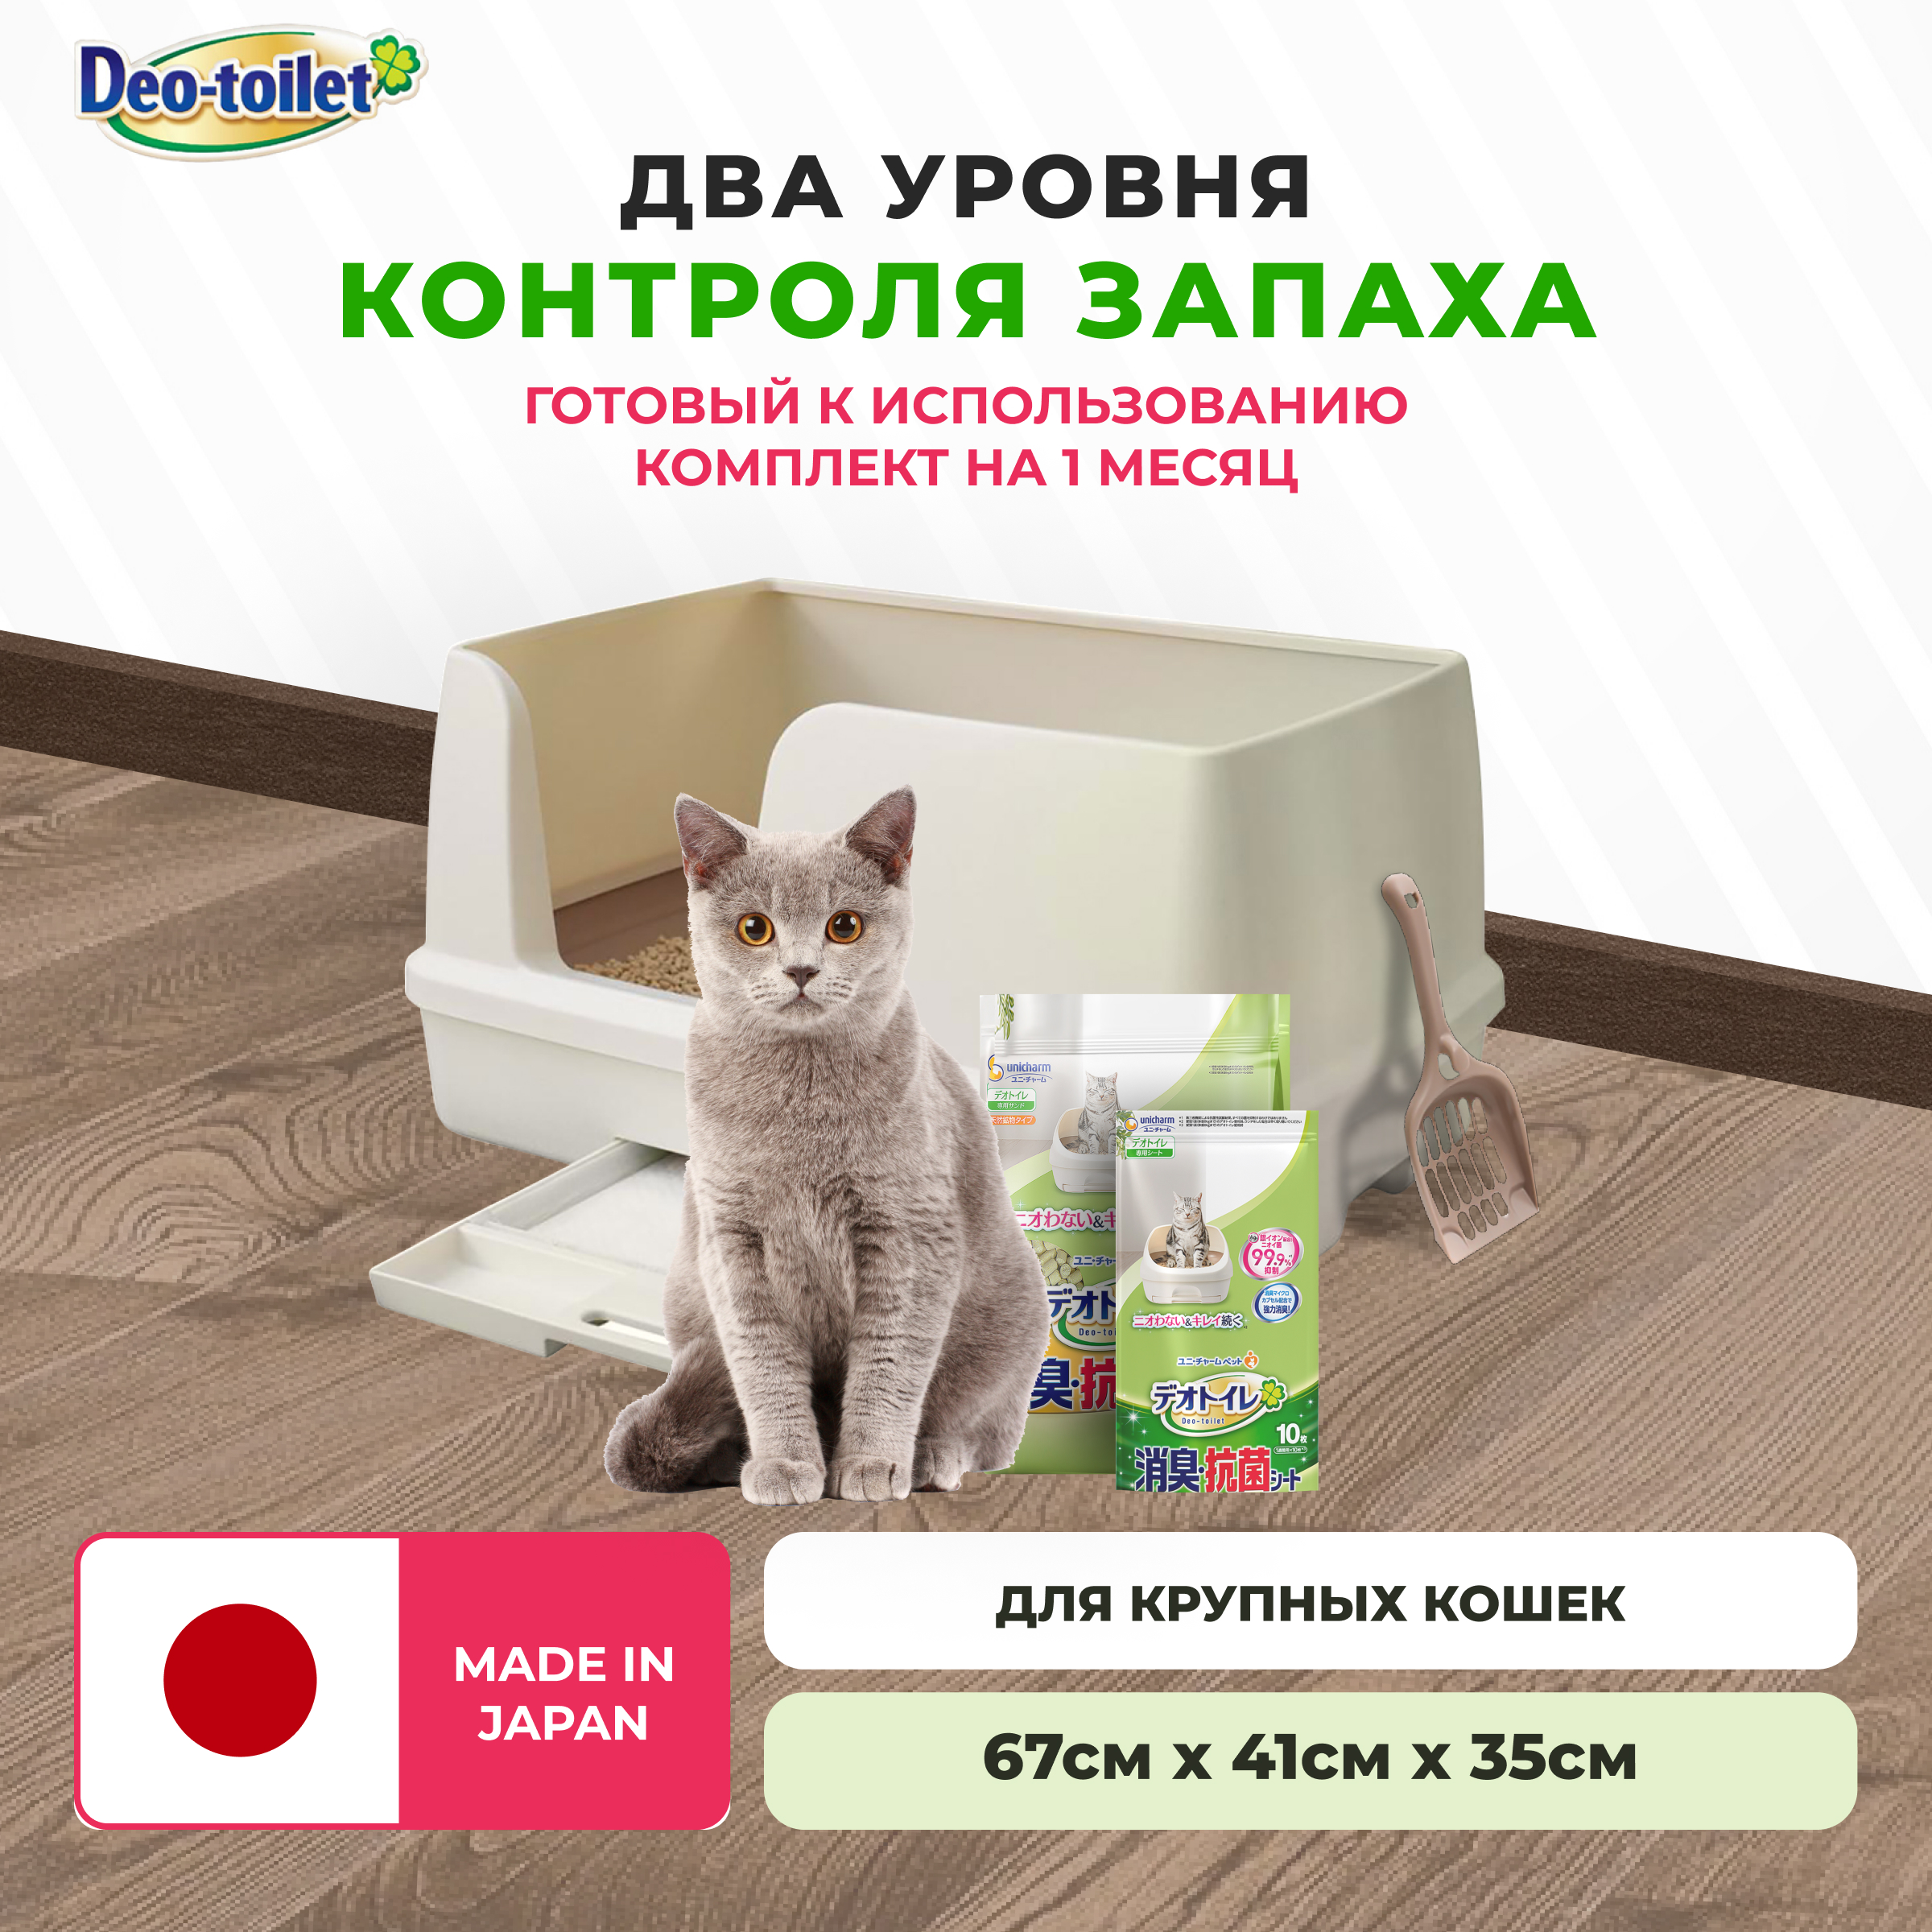 Системный туалет для крупных кошек Unicharm DeoToilet открытого типа, набор, бежевый